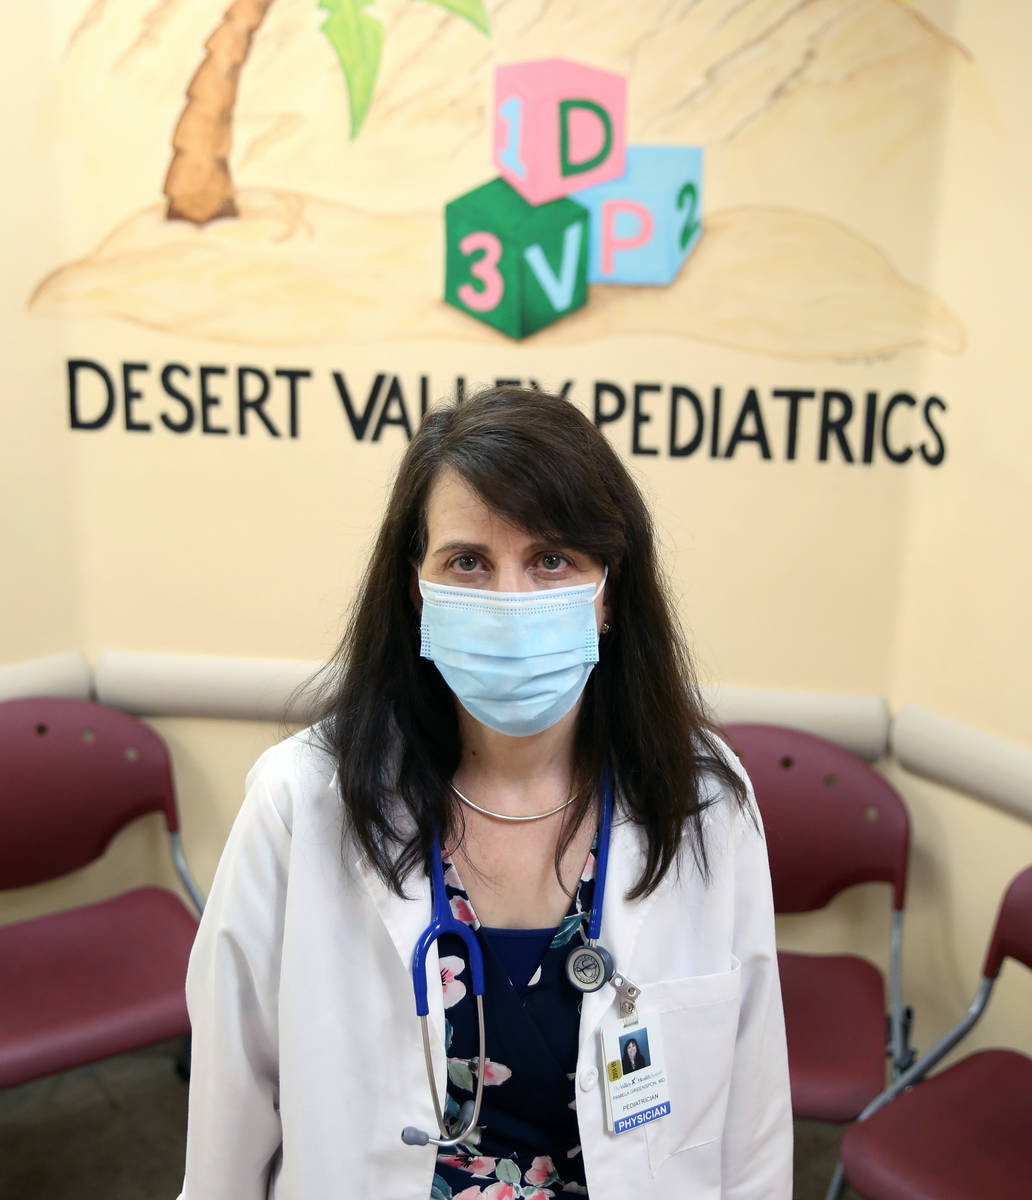 La Dra. Pamela Greenspon posa para una foto en Dessert Valley Pediatrics el martes, 5 de mayo d ...